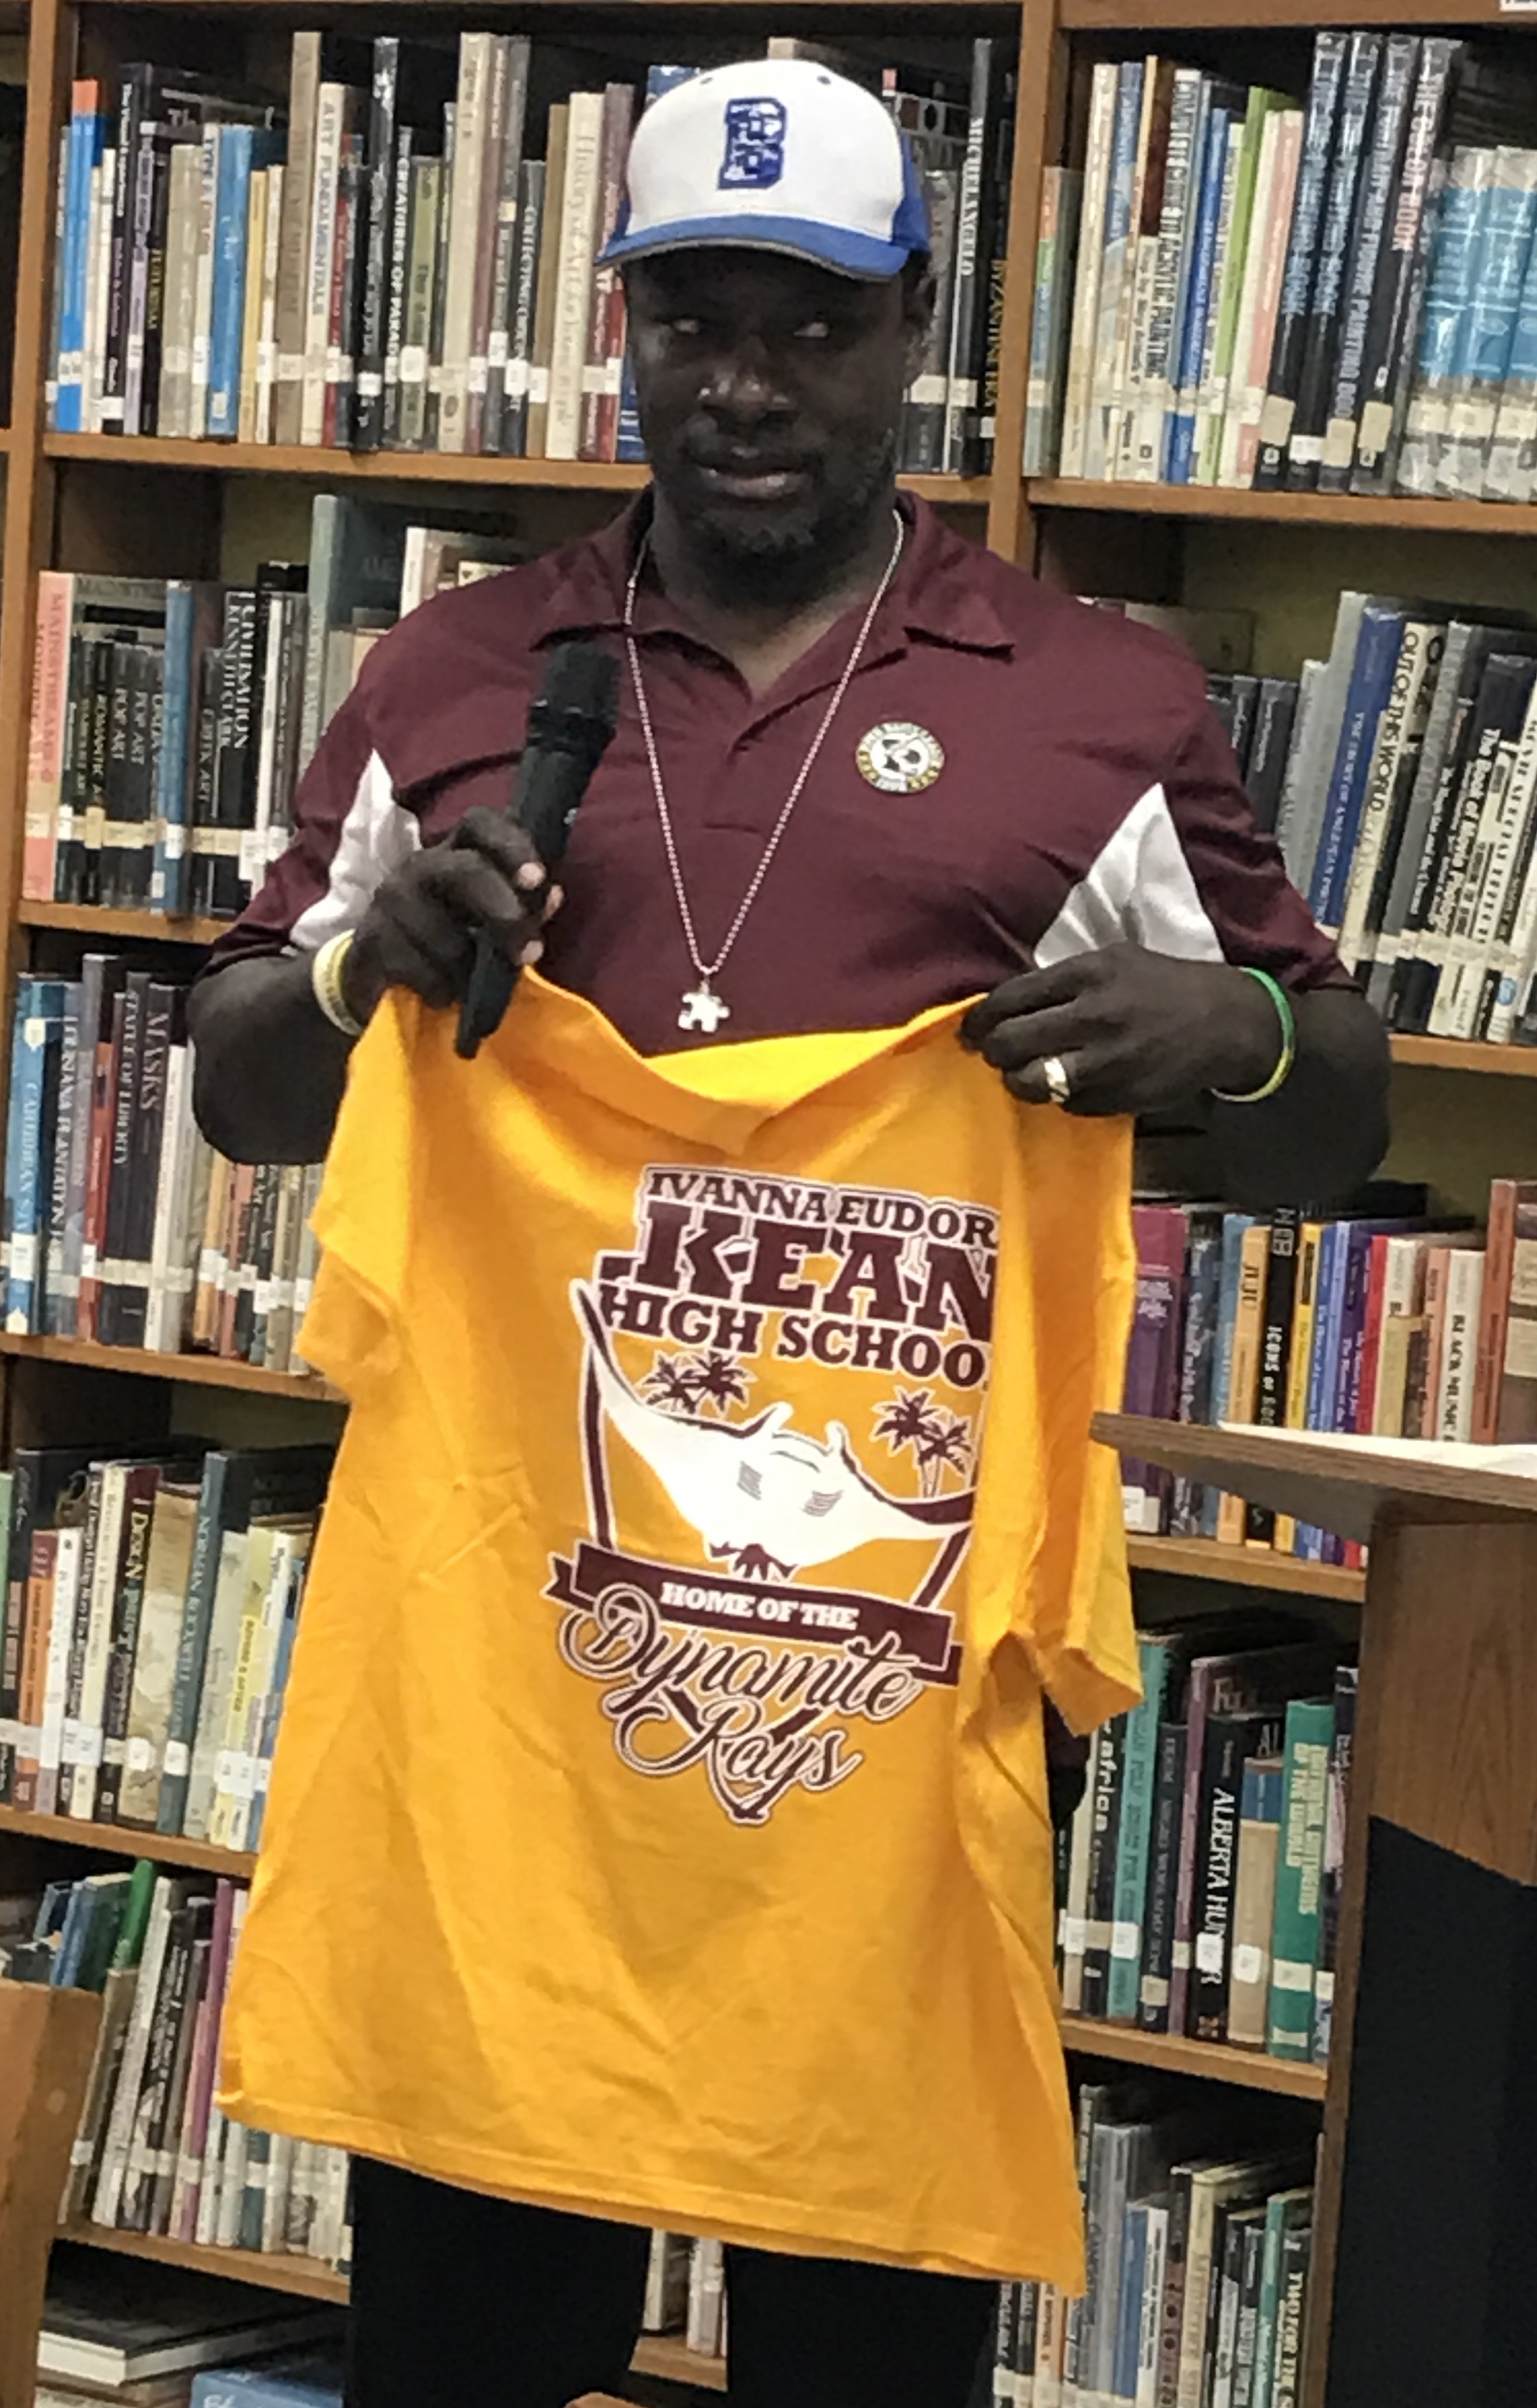 Andrew Dixon accepts Kean High School T-shirt